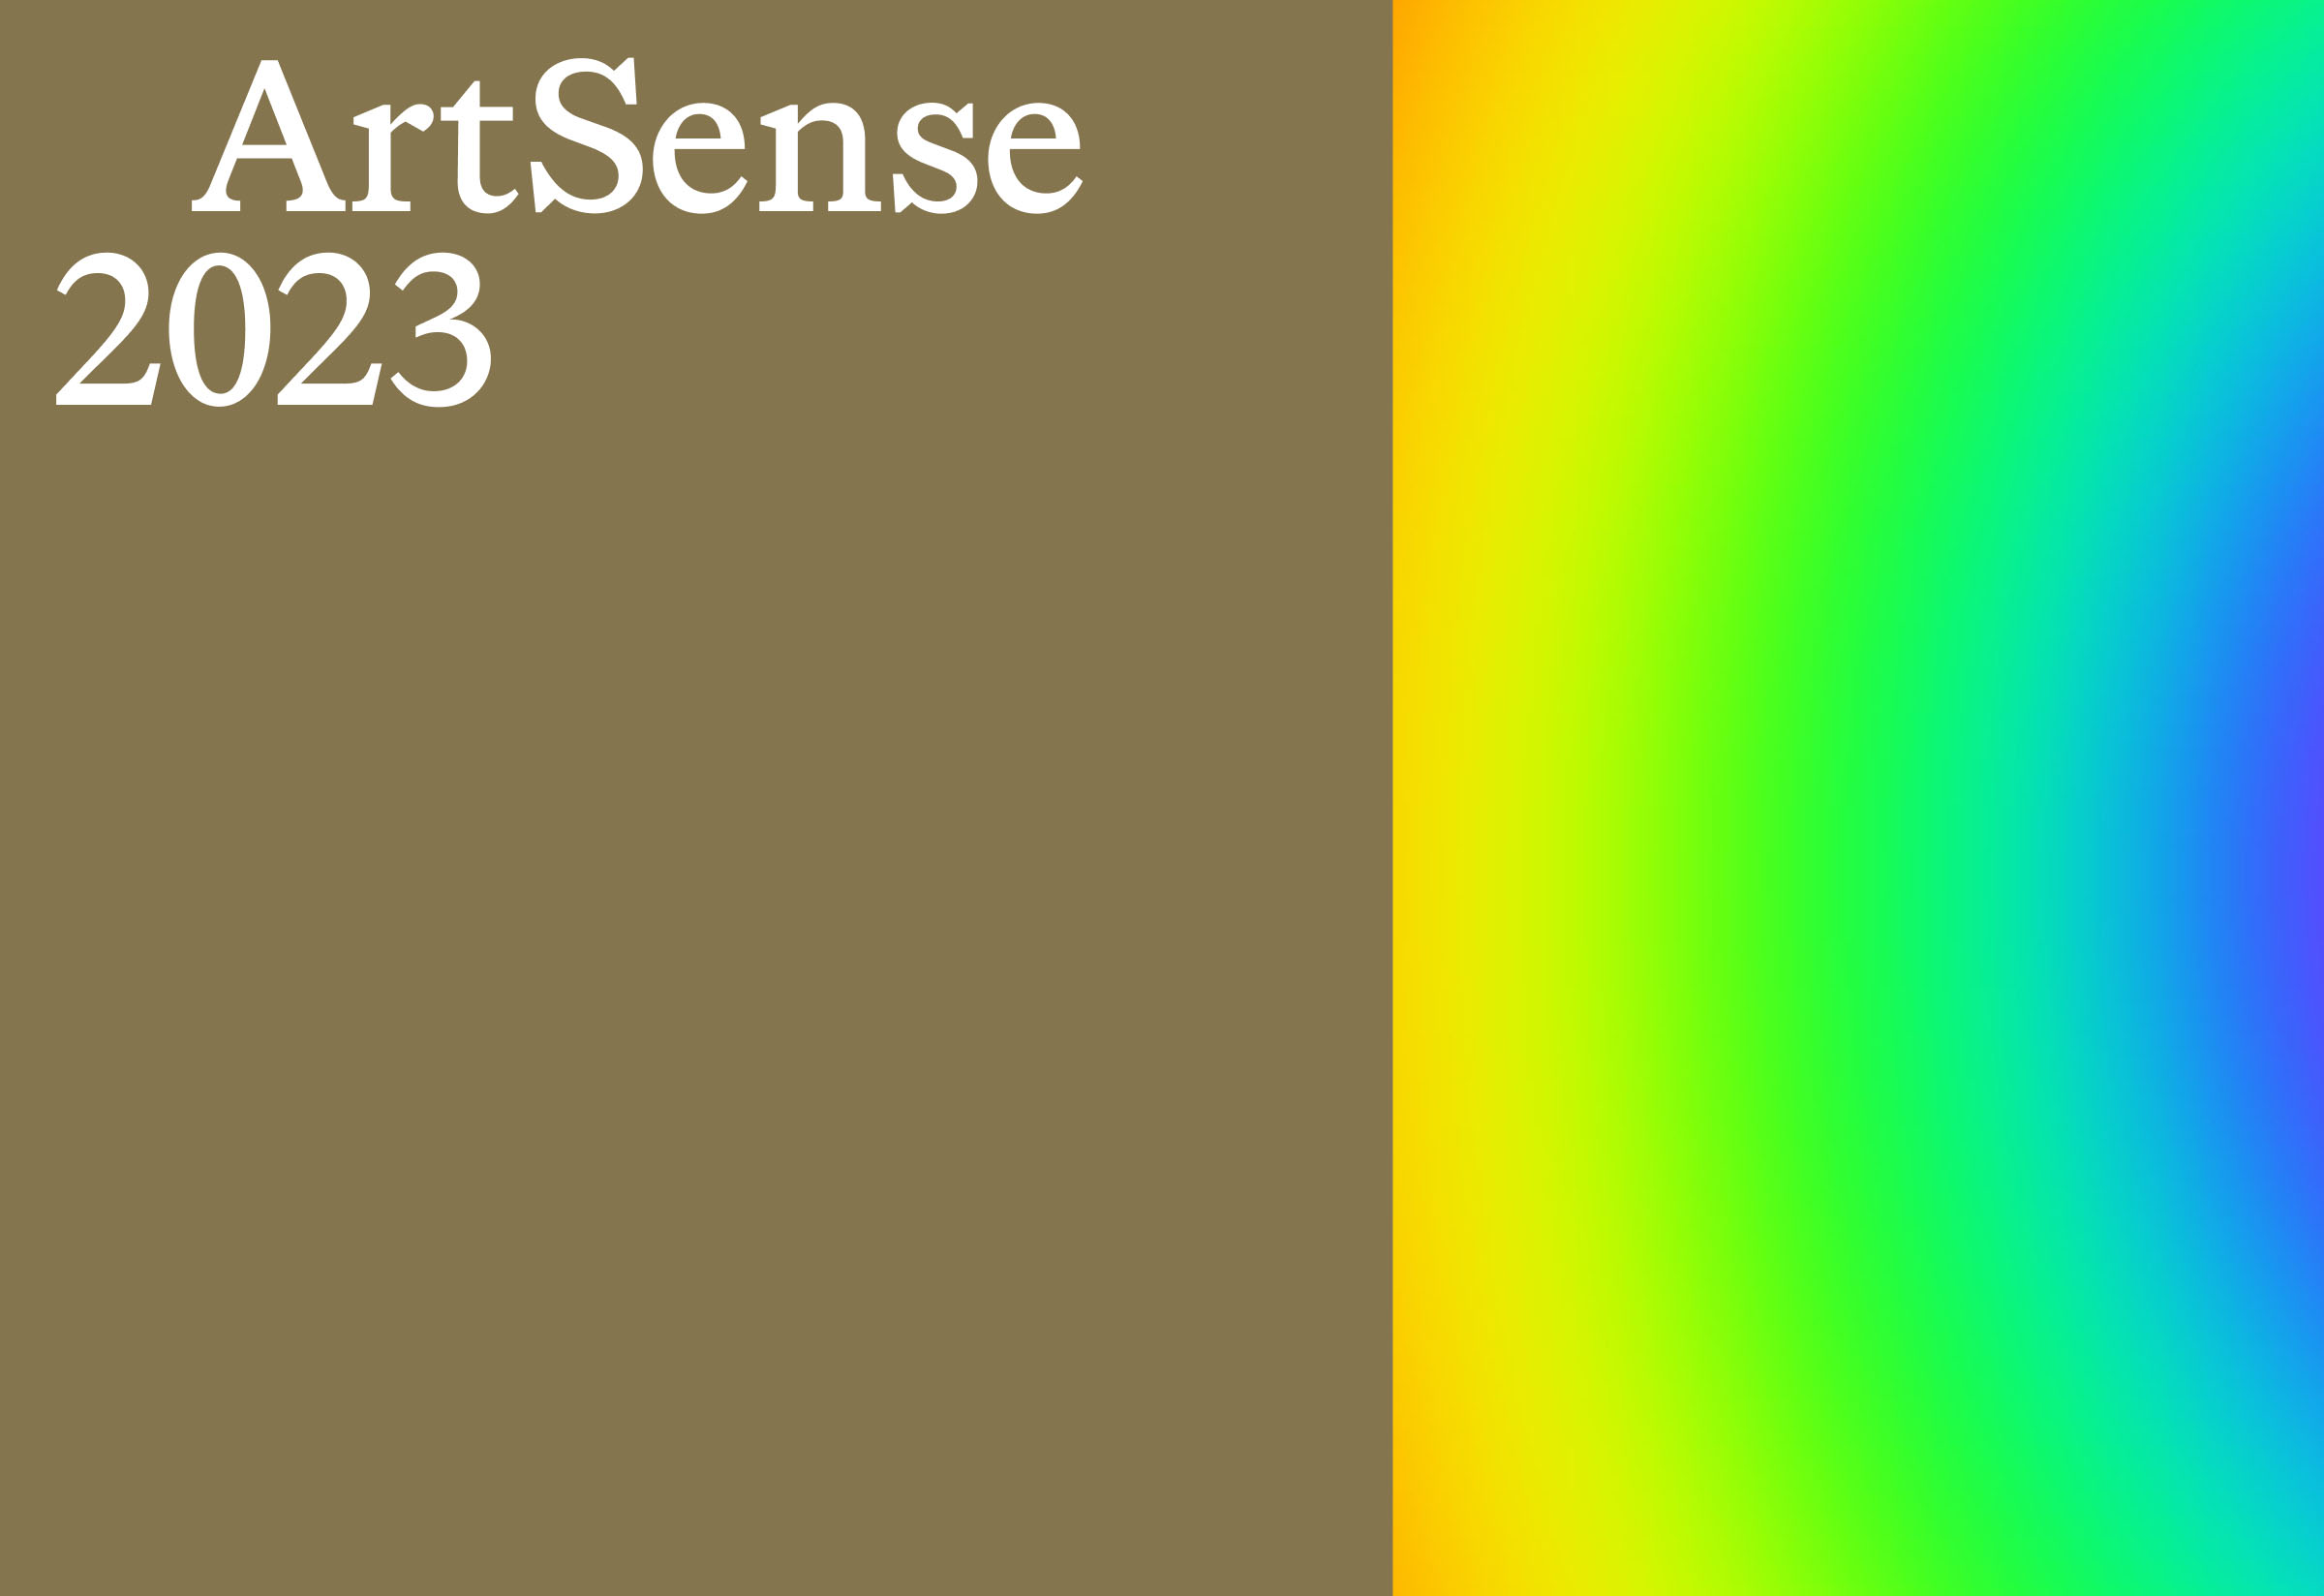 Image of ArtSense